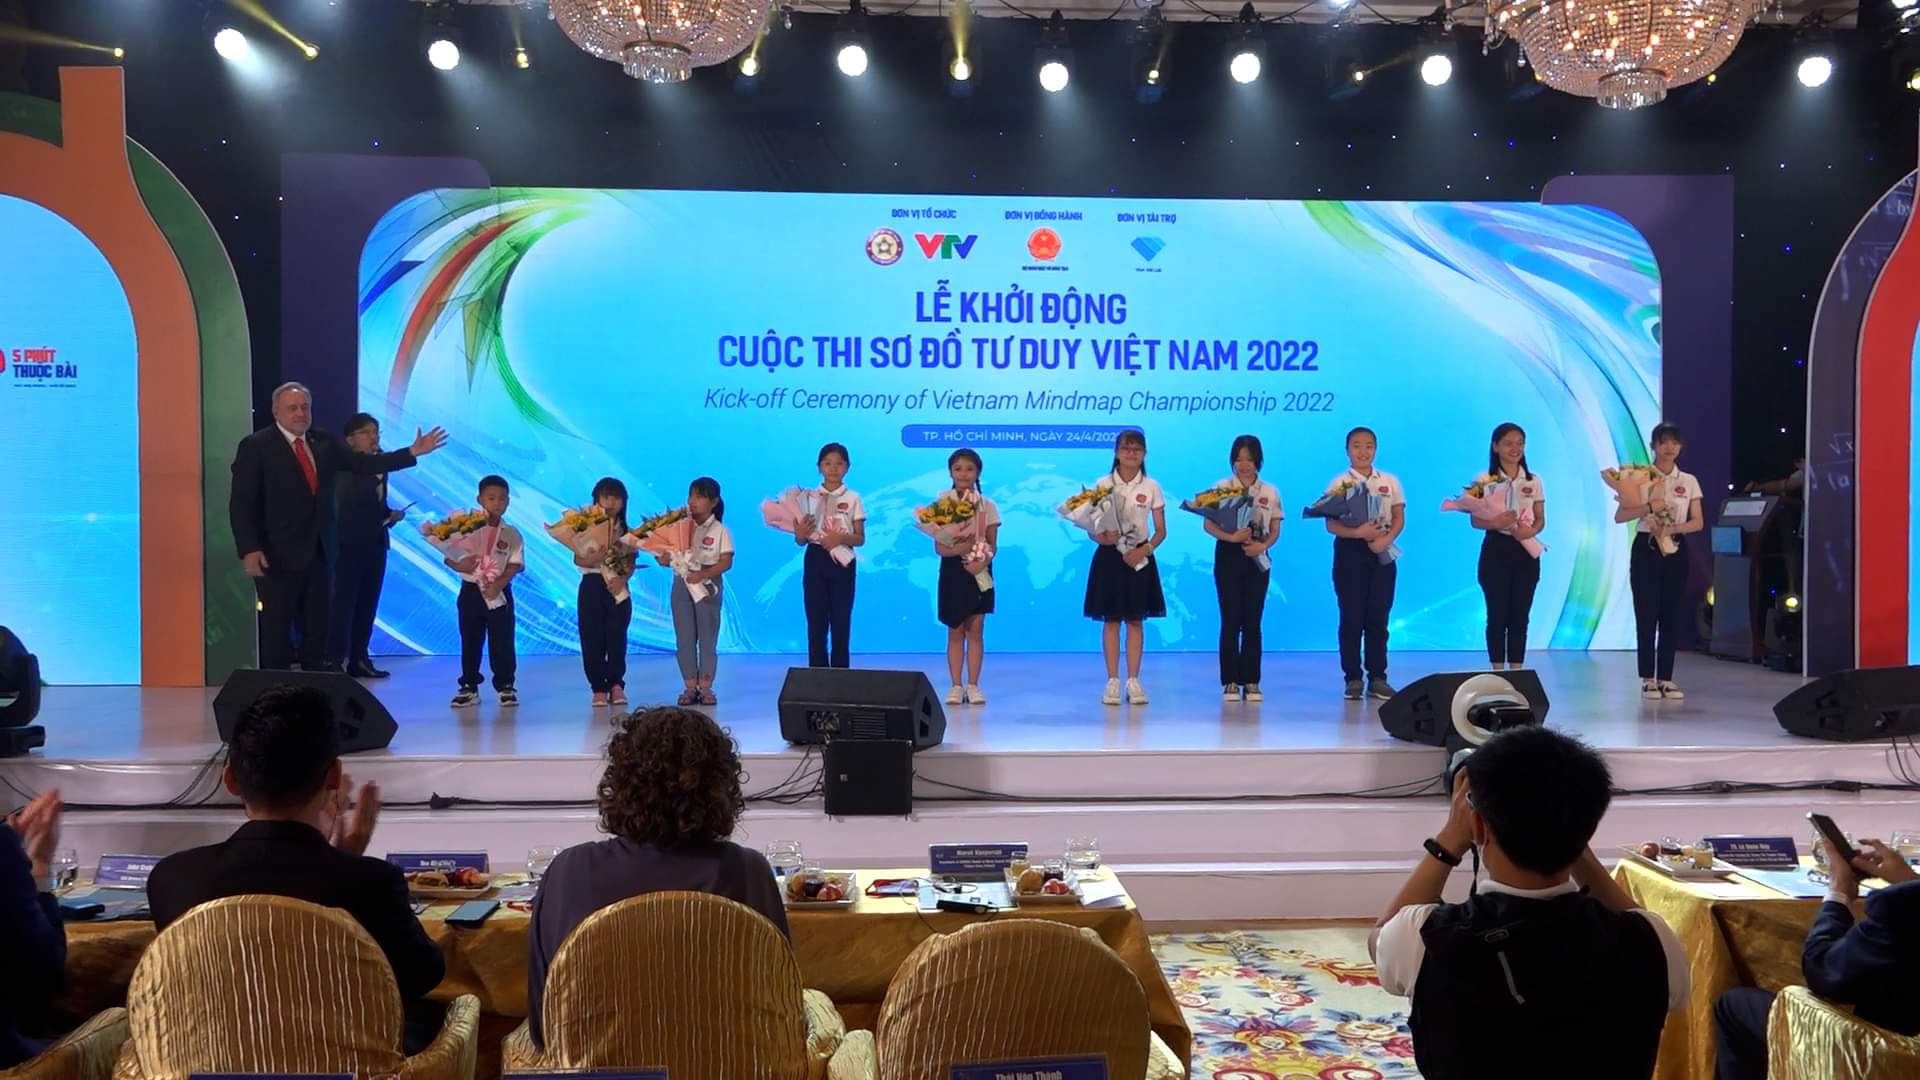 Khởi động cuộc thi vô địch Sơ đồ tư duy Việt Nam